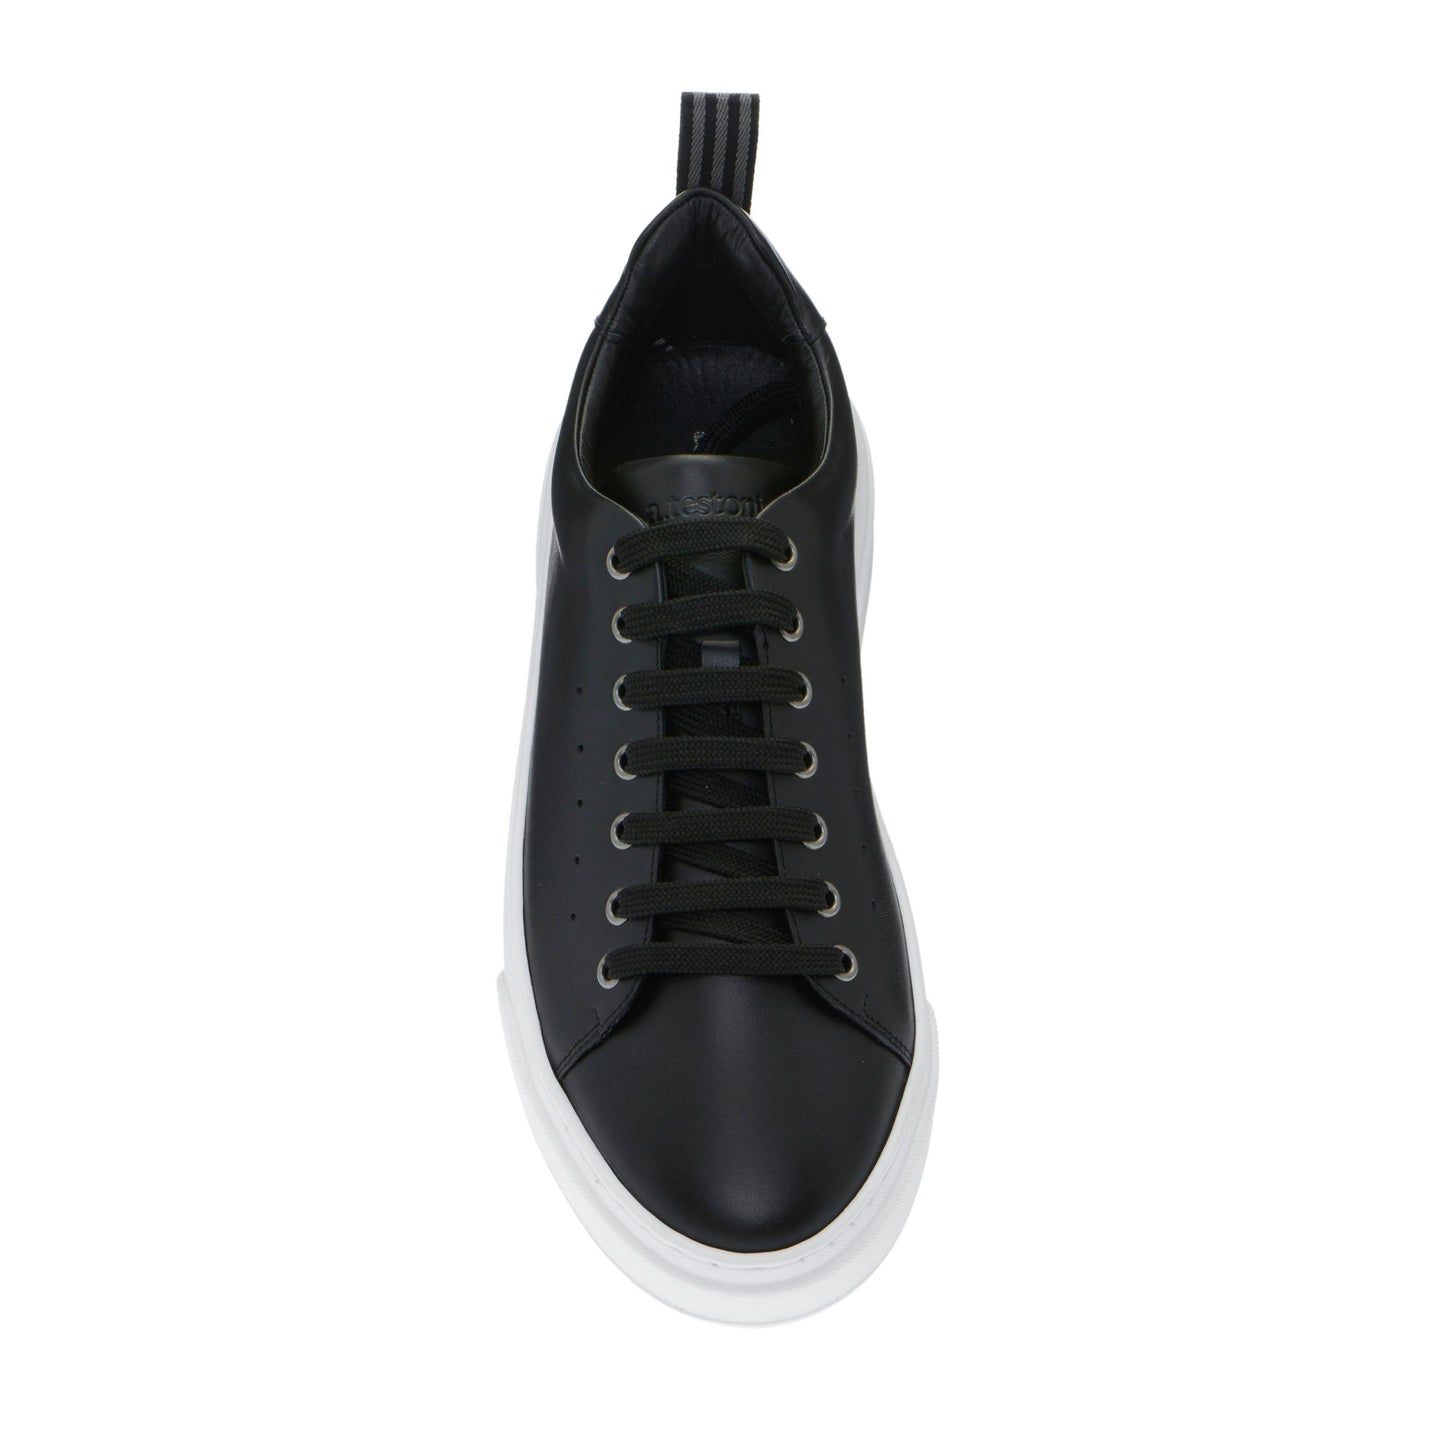 Elegant Black Calfskin Men's Sneakers